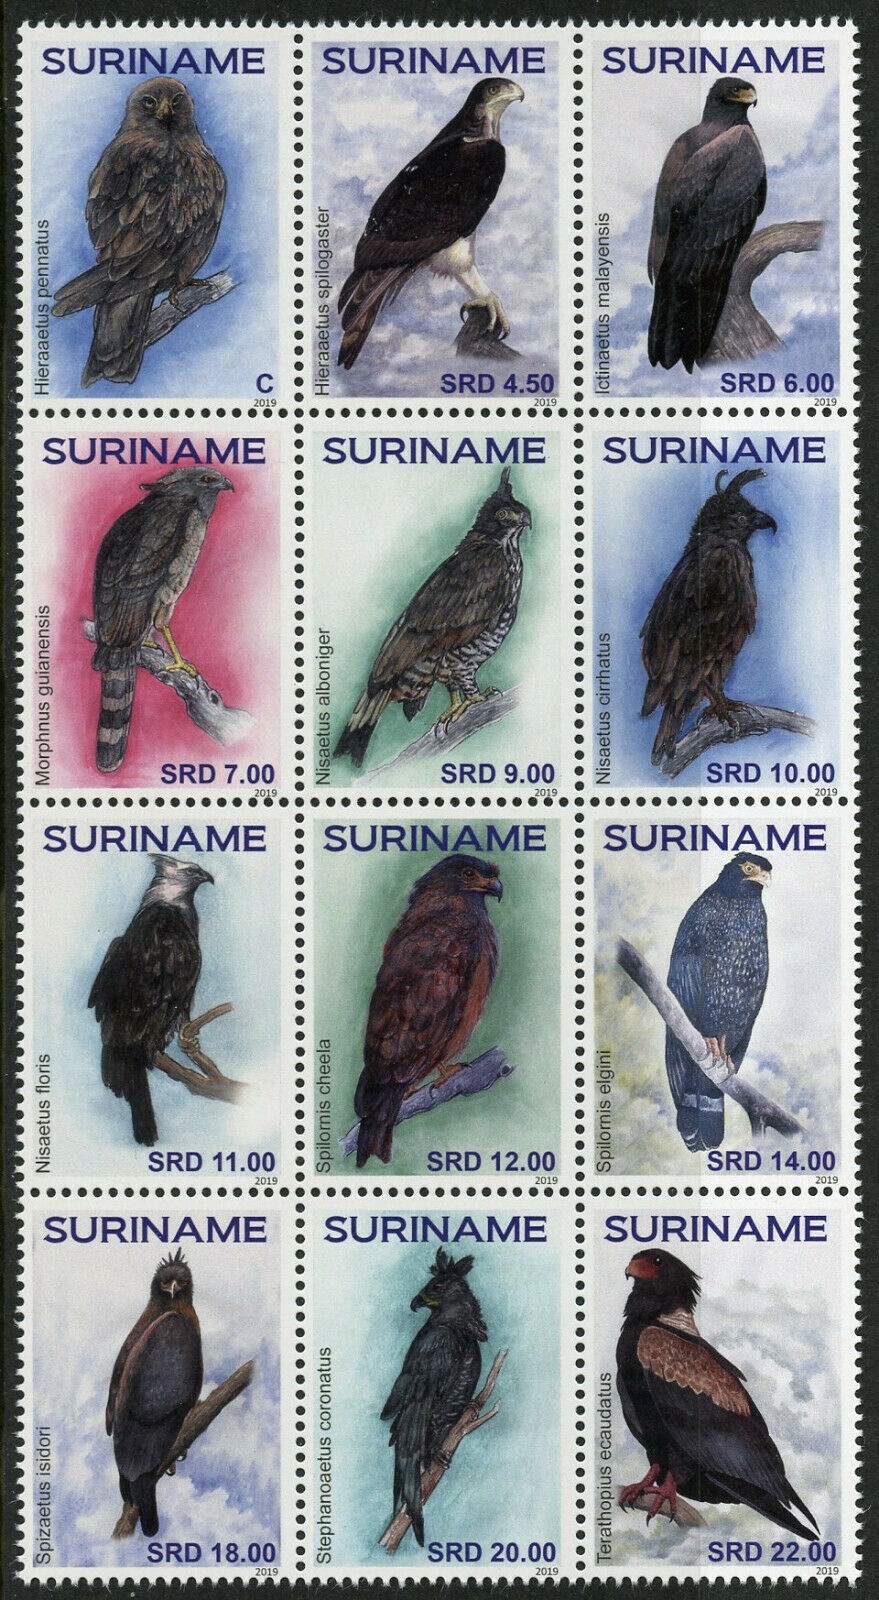 Suriname 2019 MNH Eagles Eagle 12v Block Birds of Prey Stamps